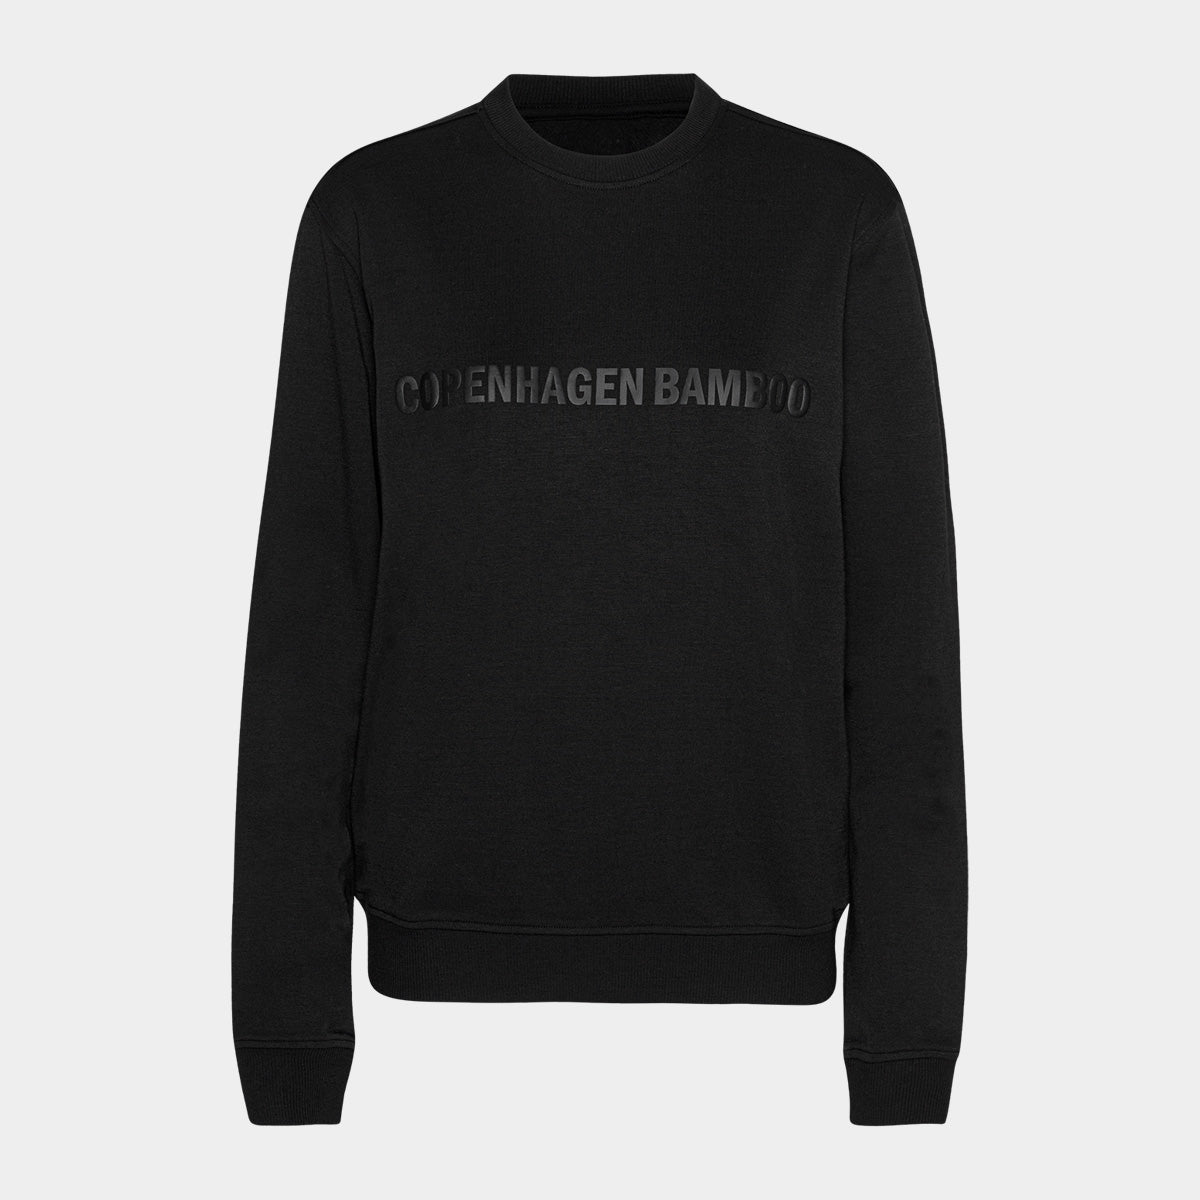 Se Sort bambus sweatshirt til dame med logo fra Copenhagen Bamboo, L hos Bambustøj.dk